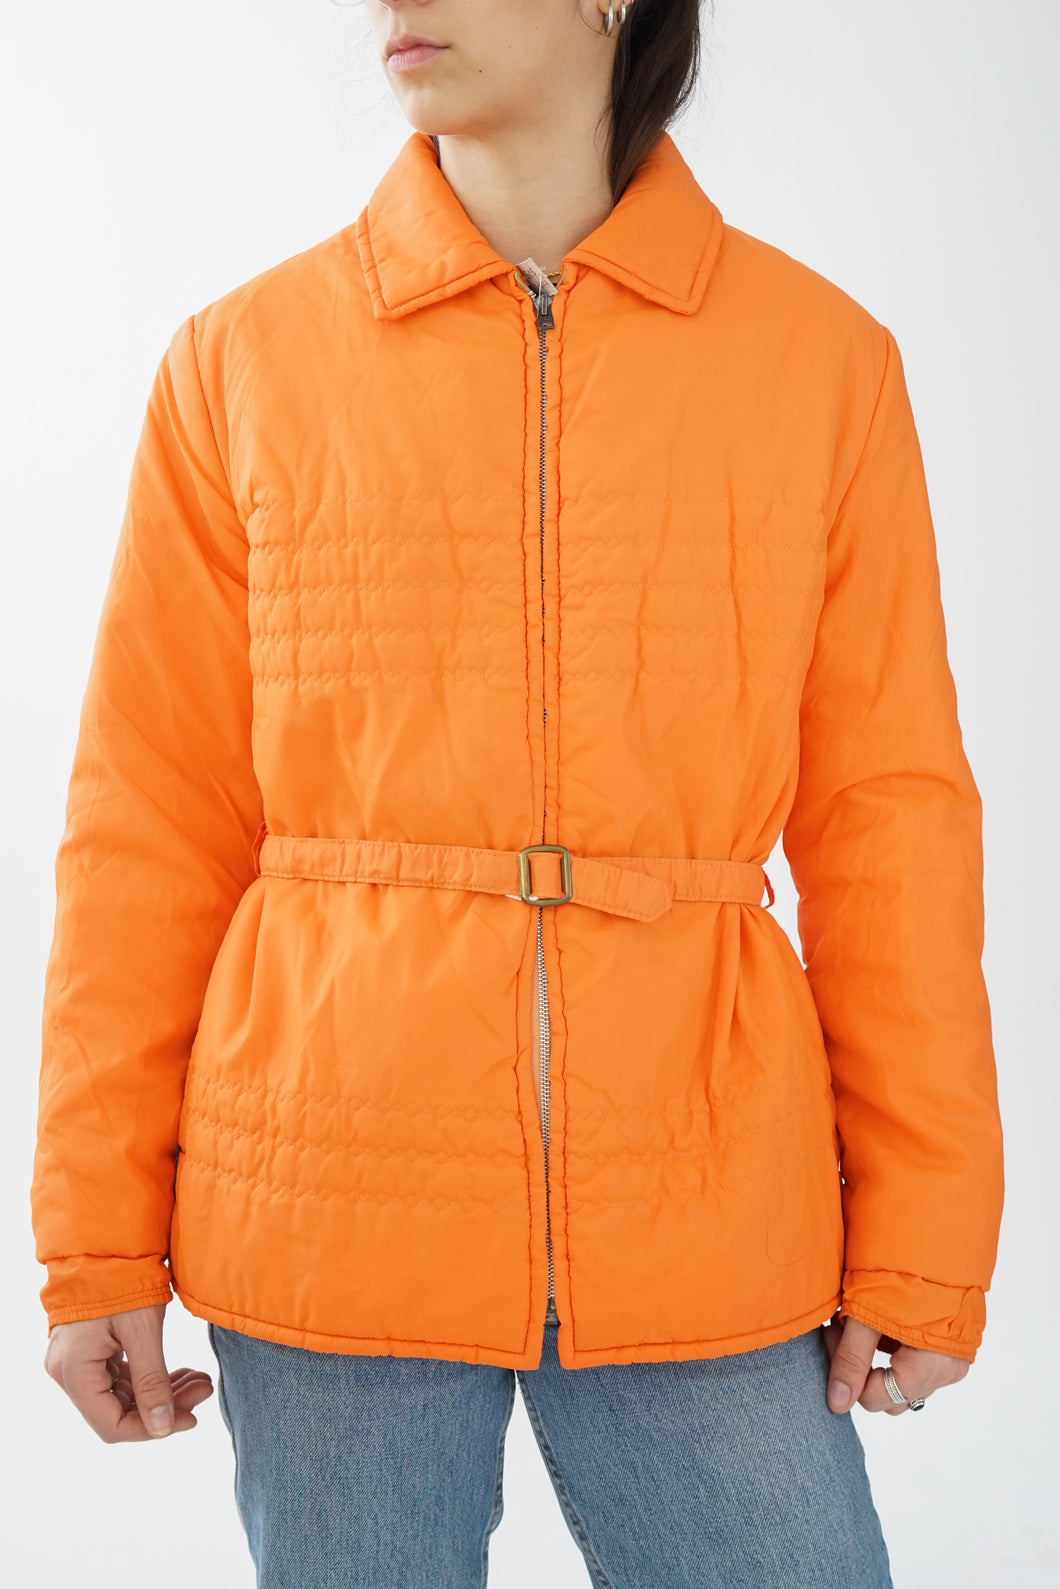 Manteau vintage 60s orange avec ceinture Lady E taille S-M